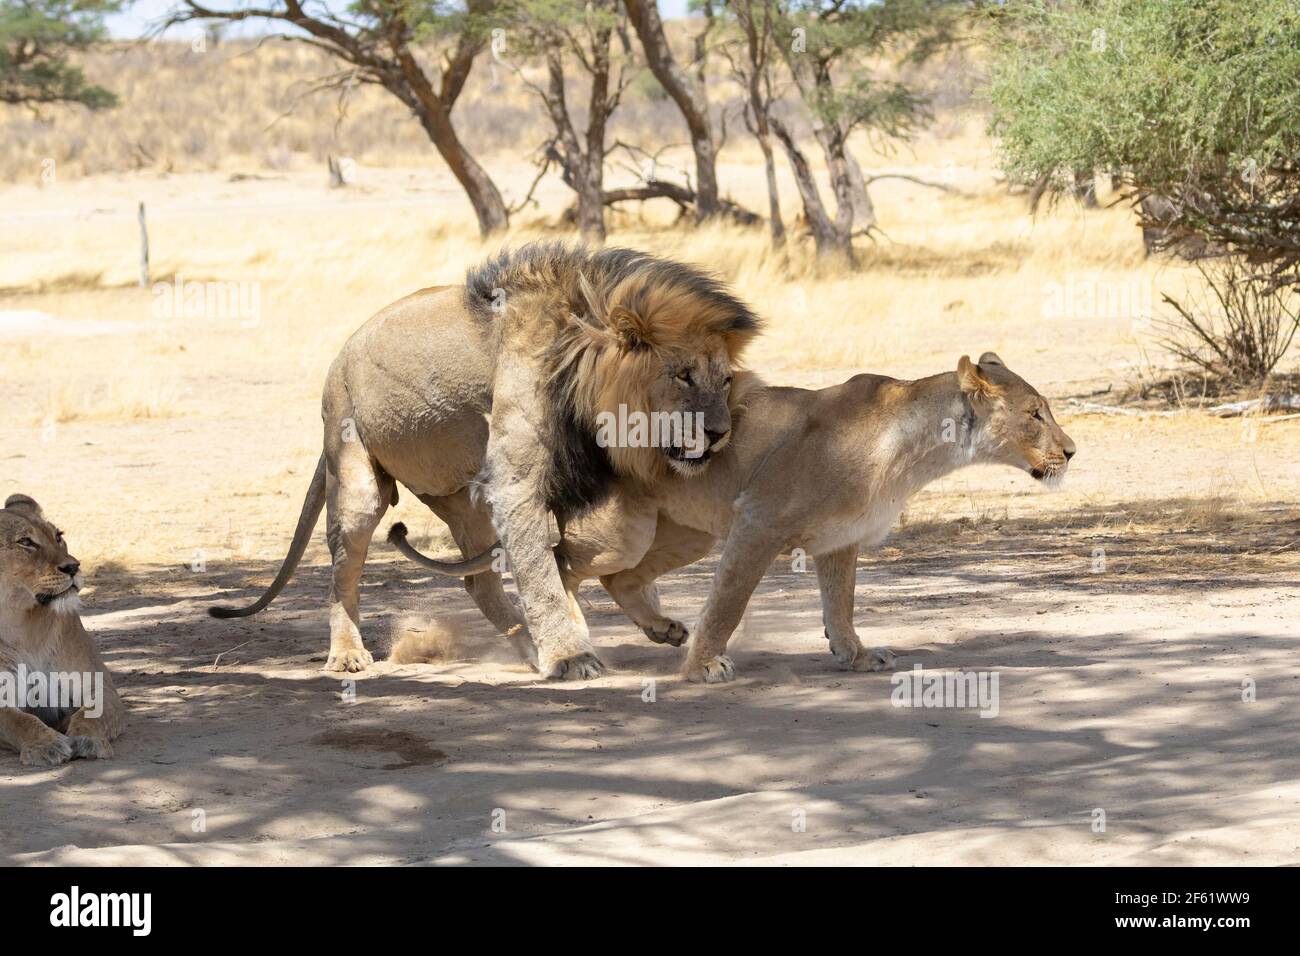 Kalahari Lion (Panthera Leo), Kgalagadi Transfrontier Park, Kalahari, Nordkap, Südafrika. Widerstrebende Löwin, die einem amourösen männlichen Löwen entkommt. Stockfoto